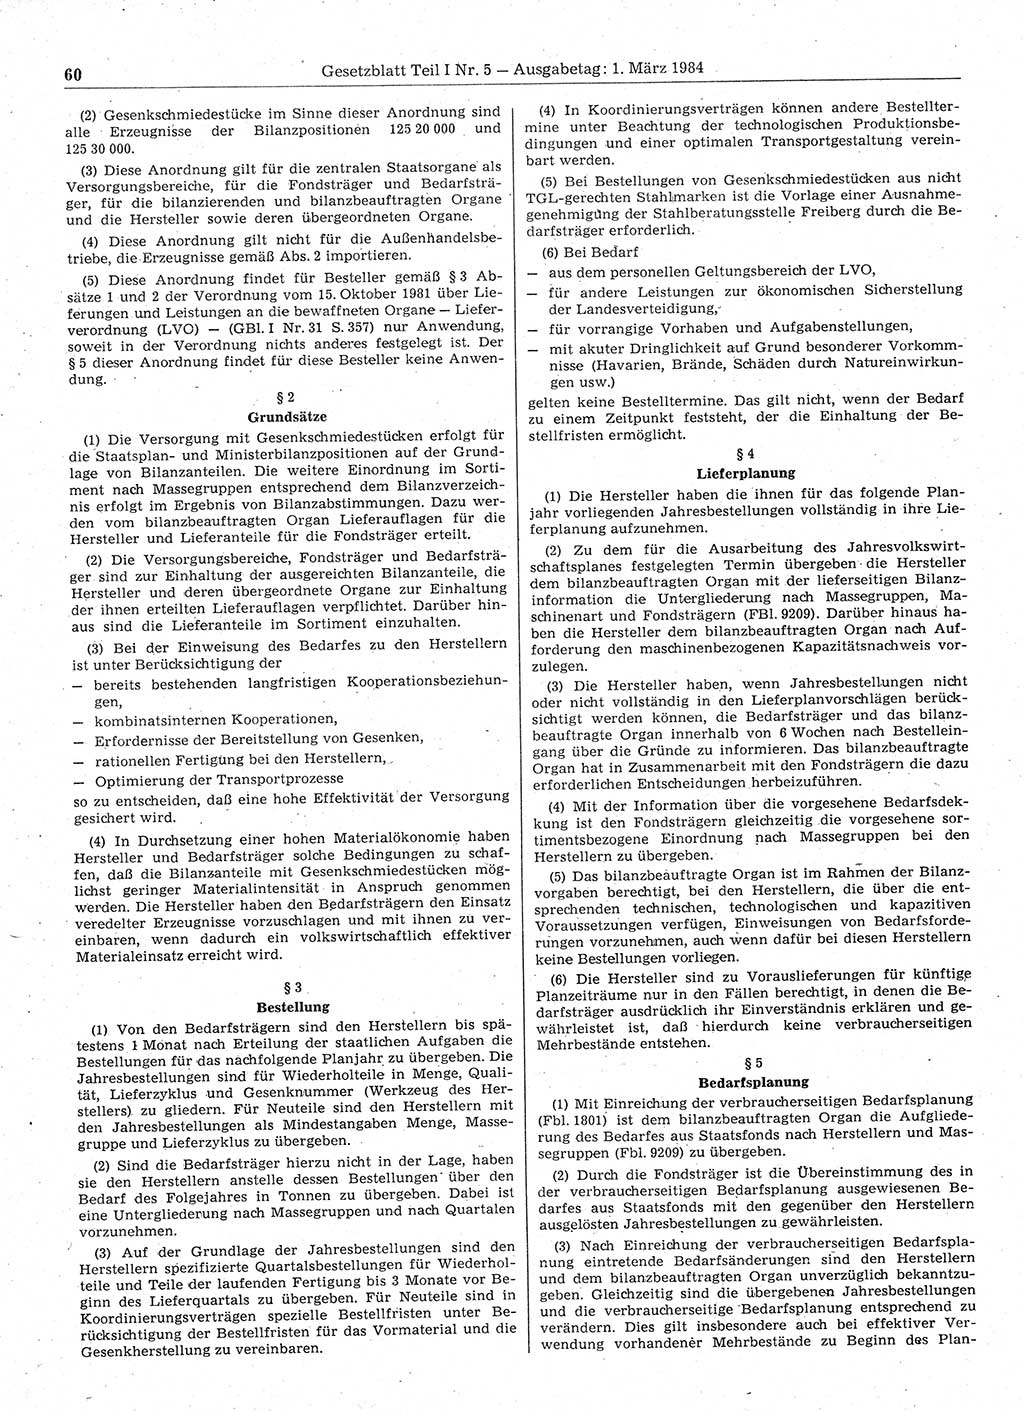 Gesetzblatt (GBl.) der Deutschen Demokratischen Republik (DDR) Teil Ⅰ 1984, Seite 60 (GBl. DDR Ⅰ 1984, S. 60)